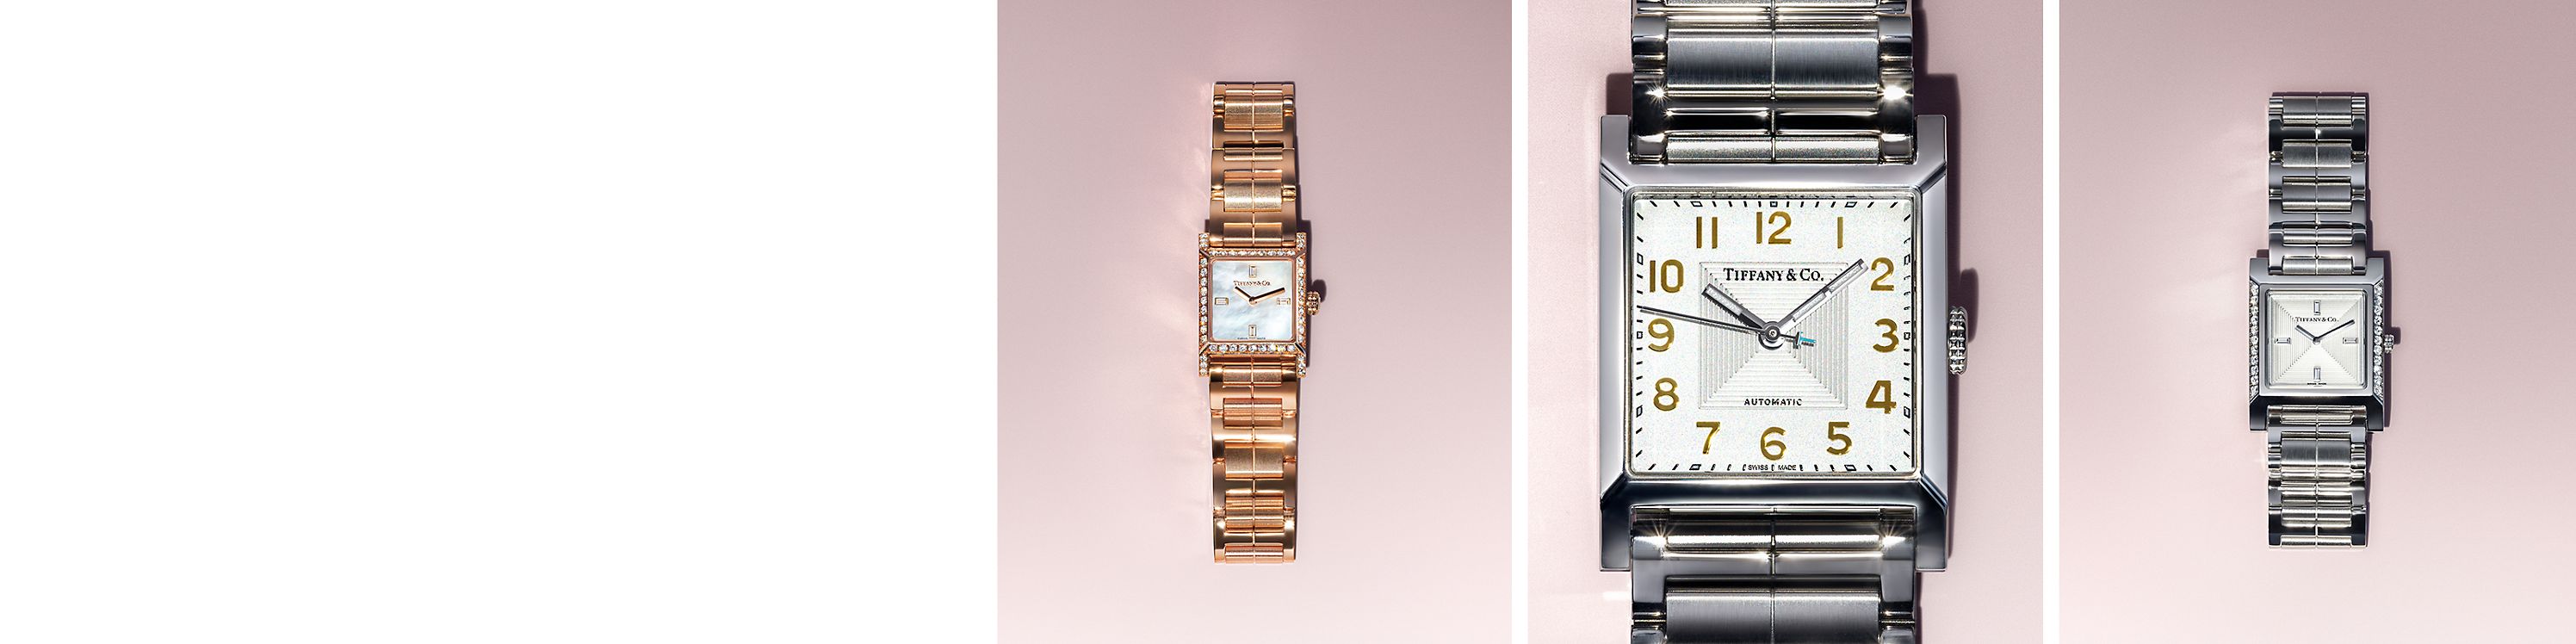 Tiffany & Co. 腕錶